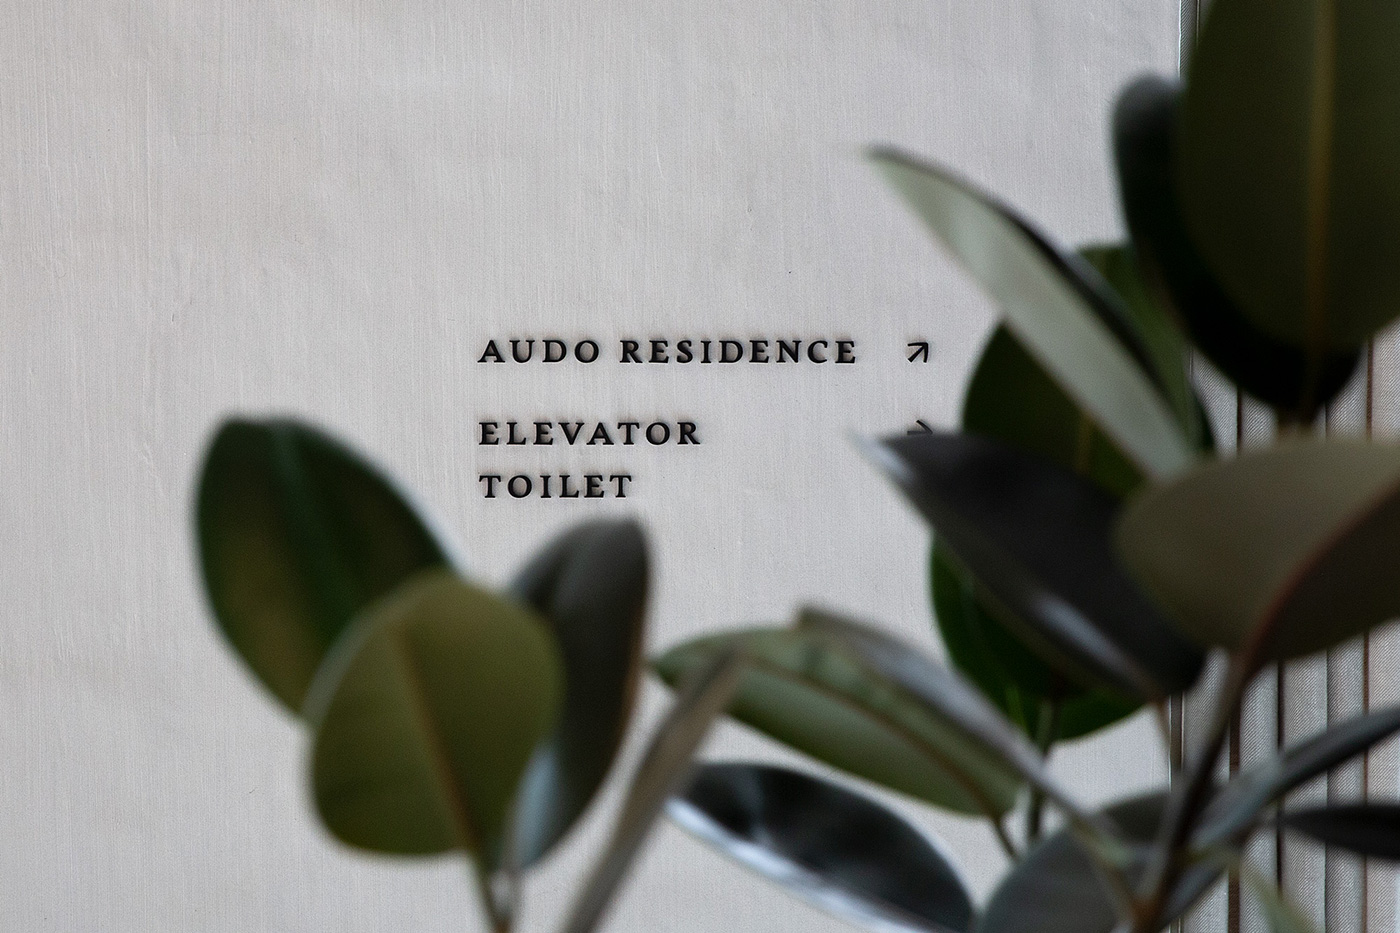 丹麦Audo混合展示空间品牌形象设计